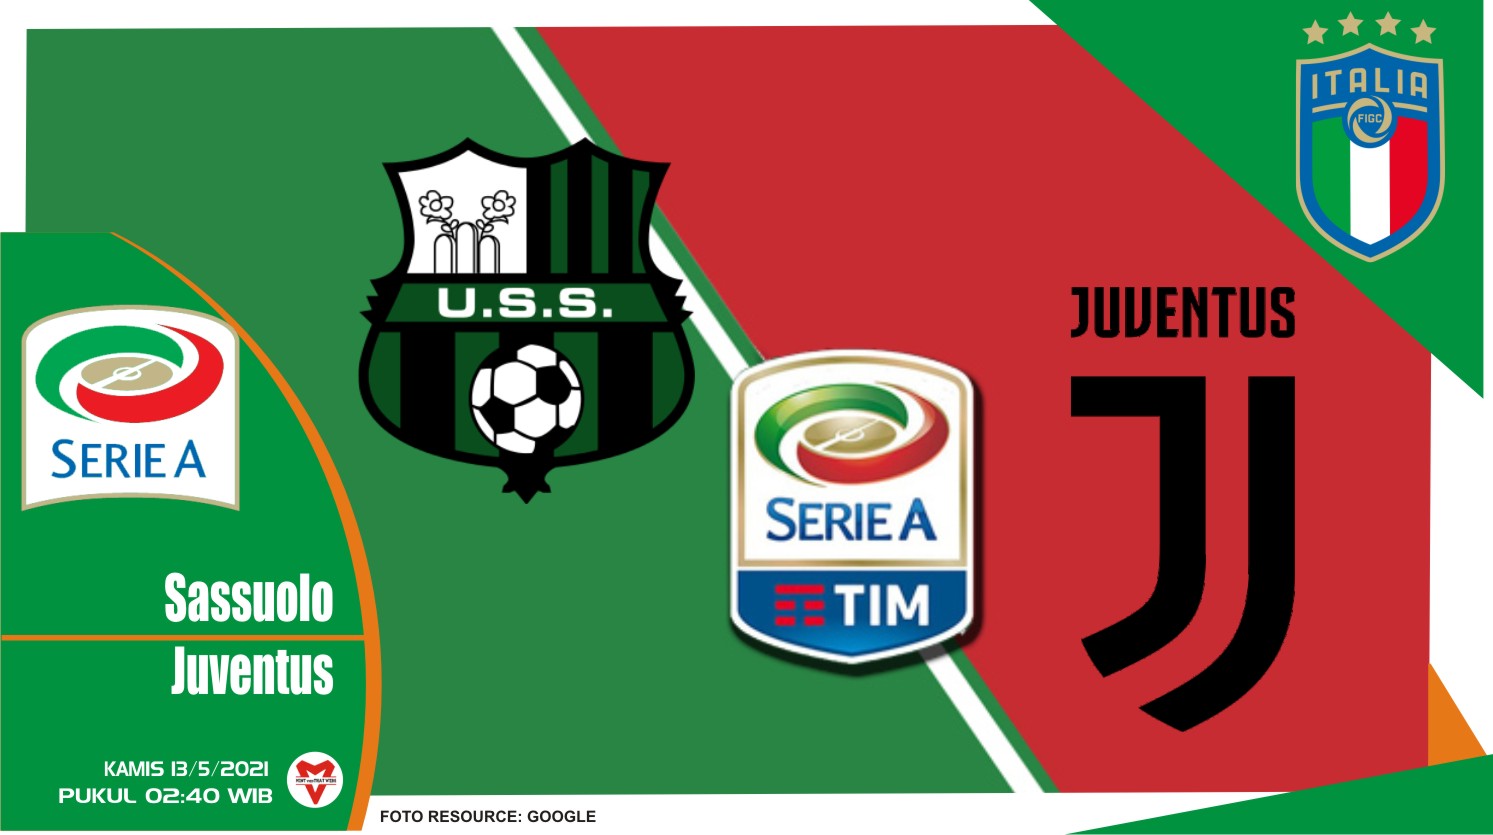 Prediksi Liga Italia: Sassuolo vs Juventus - 13 Mei 2021